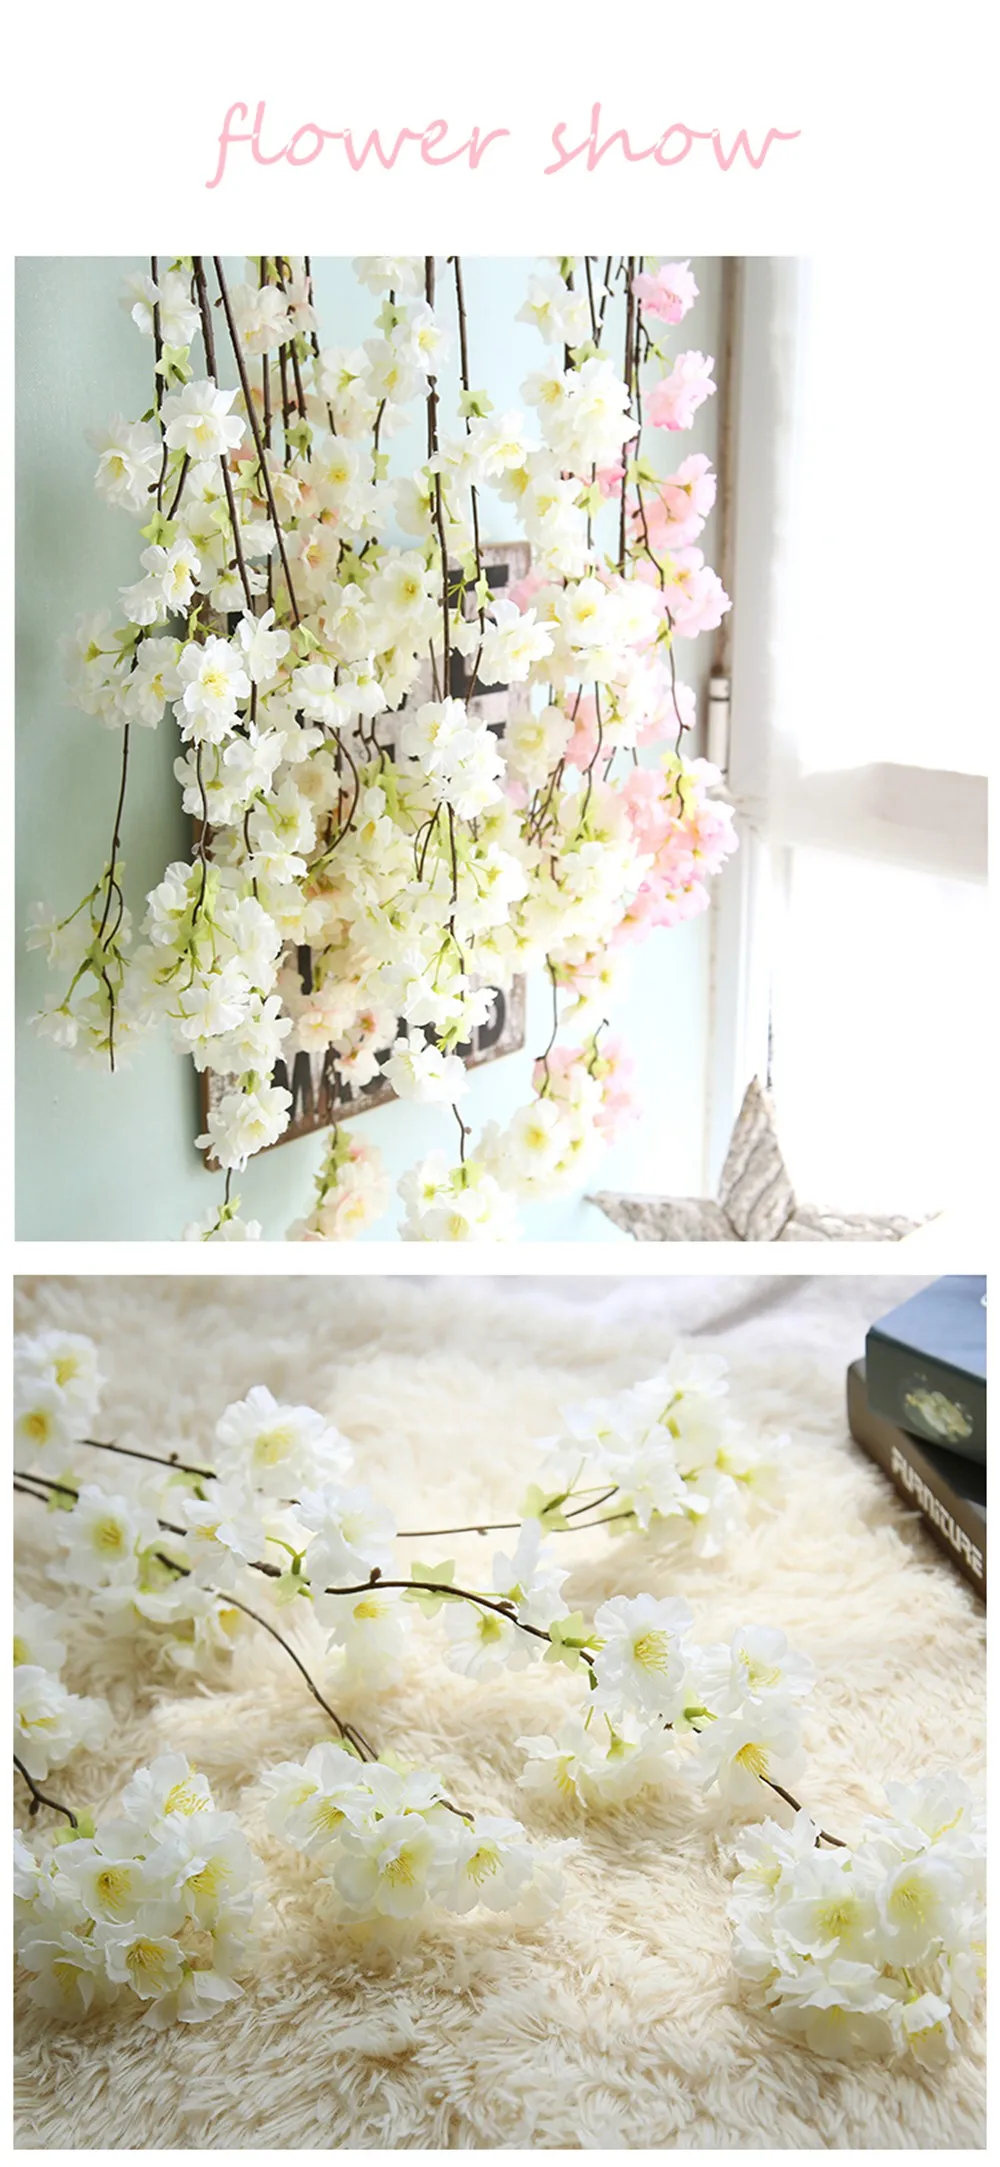 1 шт. искусственные японские Цветы сакуры, декоративные цветы для свадебной вечеринки, домашний букет сакуры